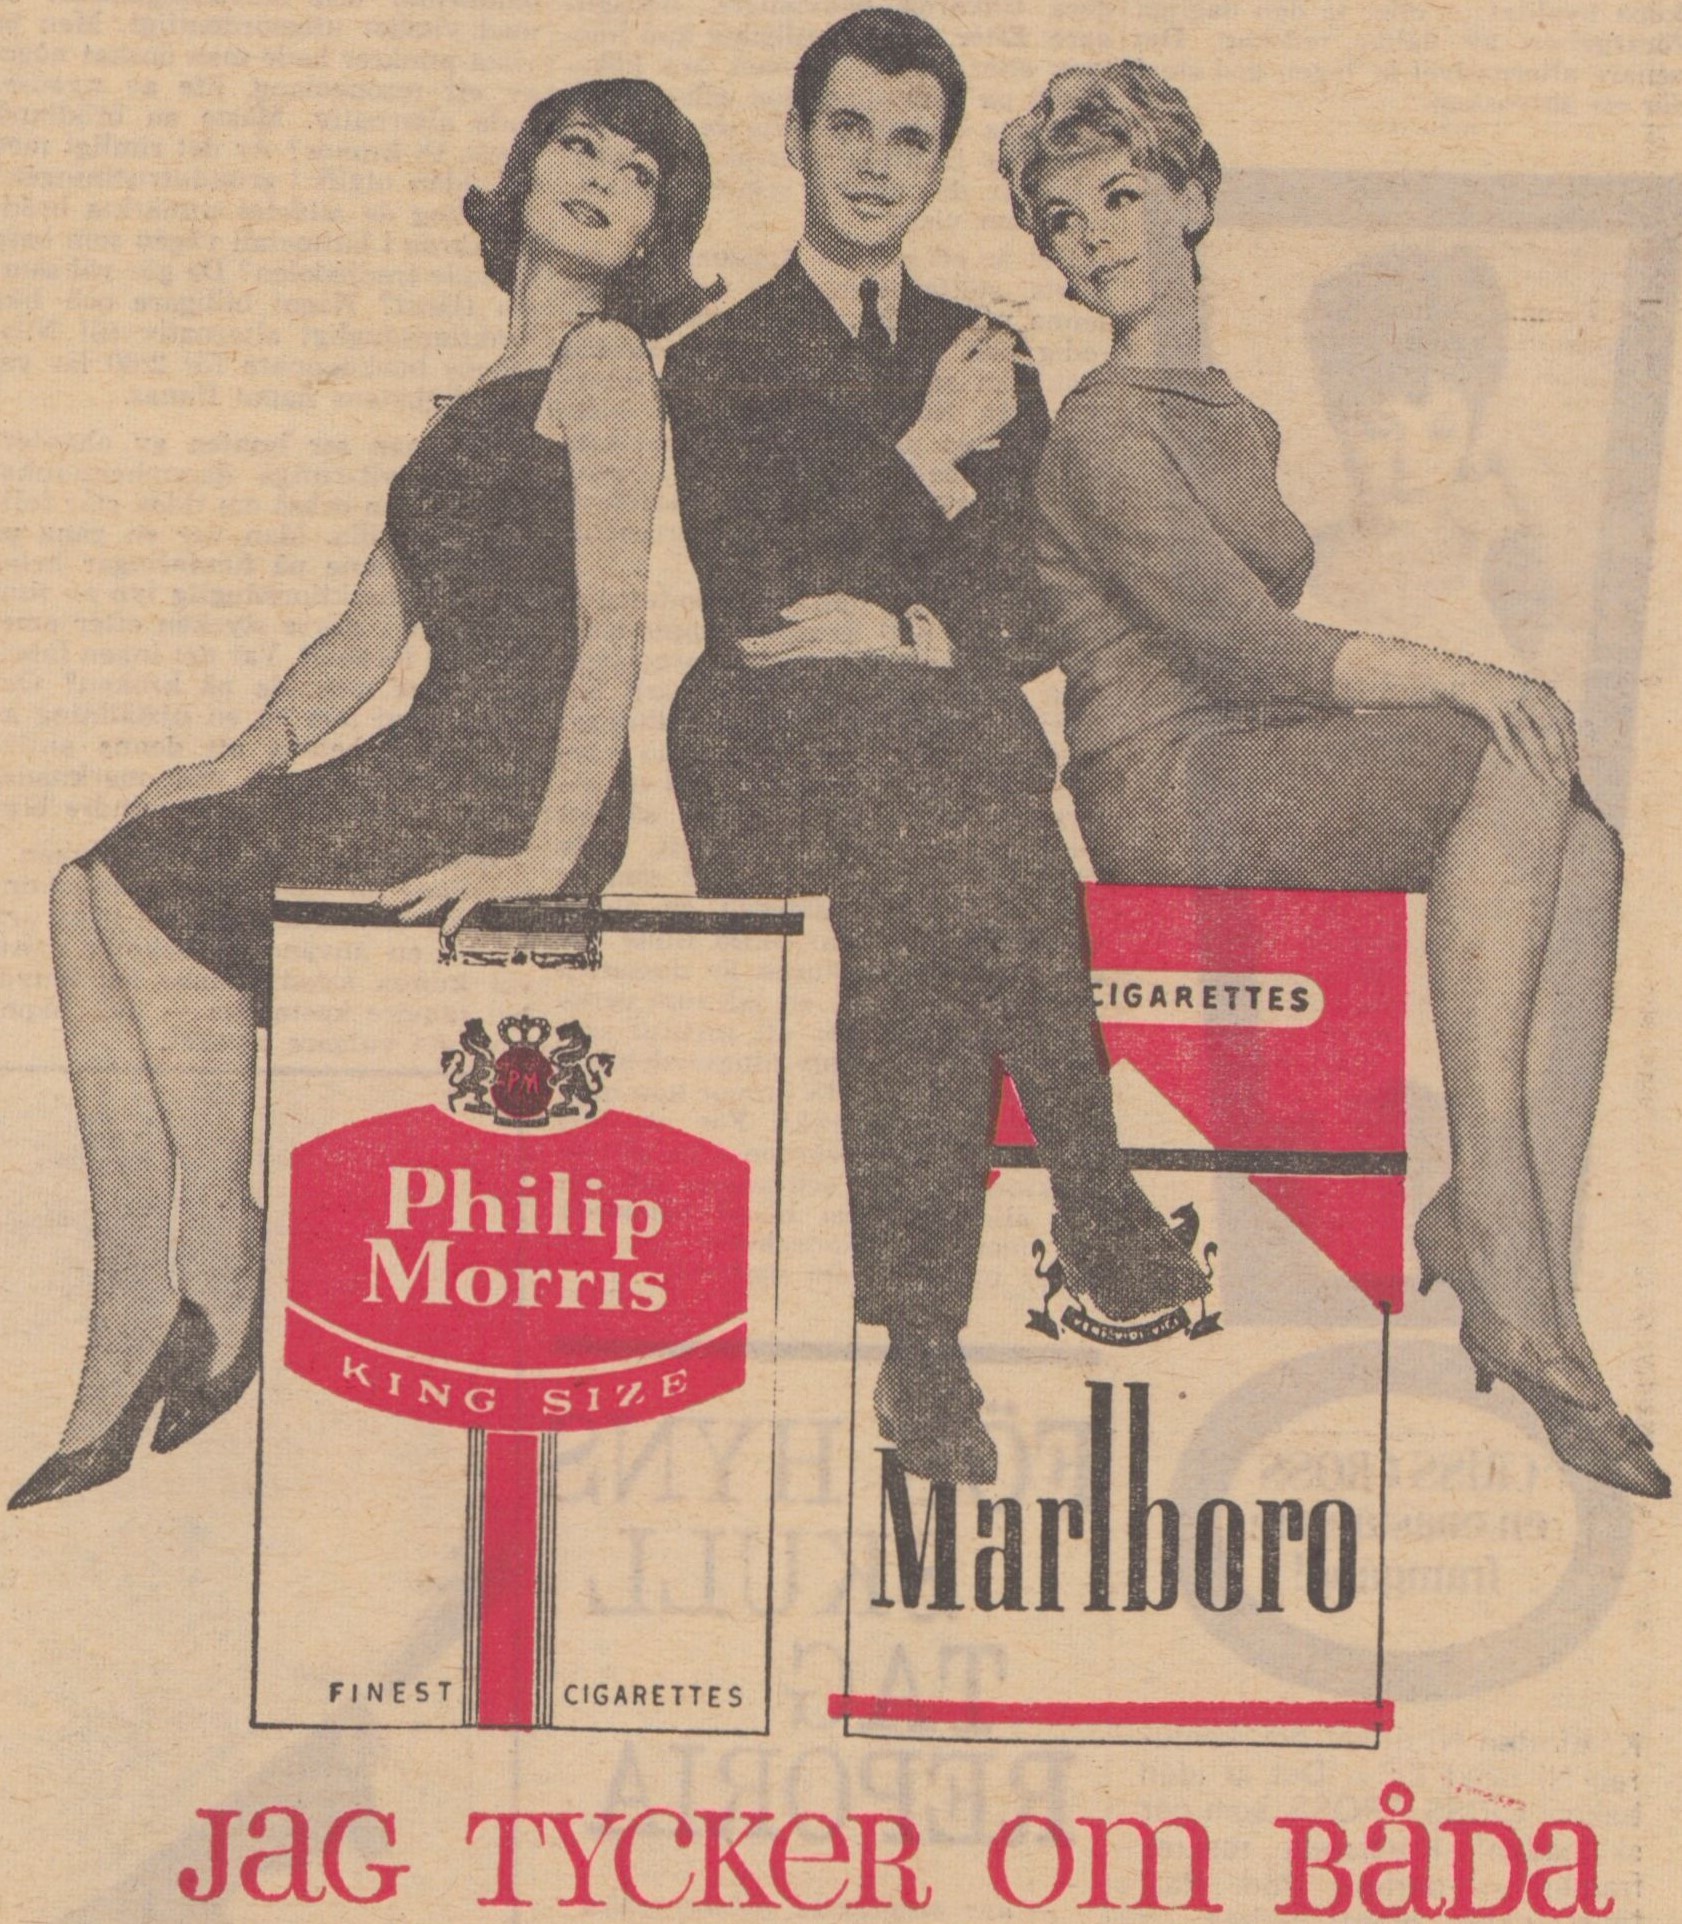 Tidningsreklam, man omgiven av två vackra kvinnor på cigarettpaket från Philip Morris och Marlboro. Text: Jag tycker om båda.